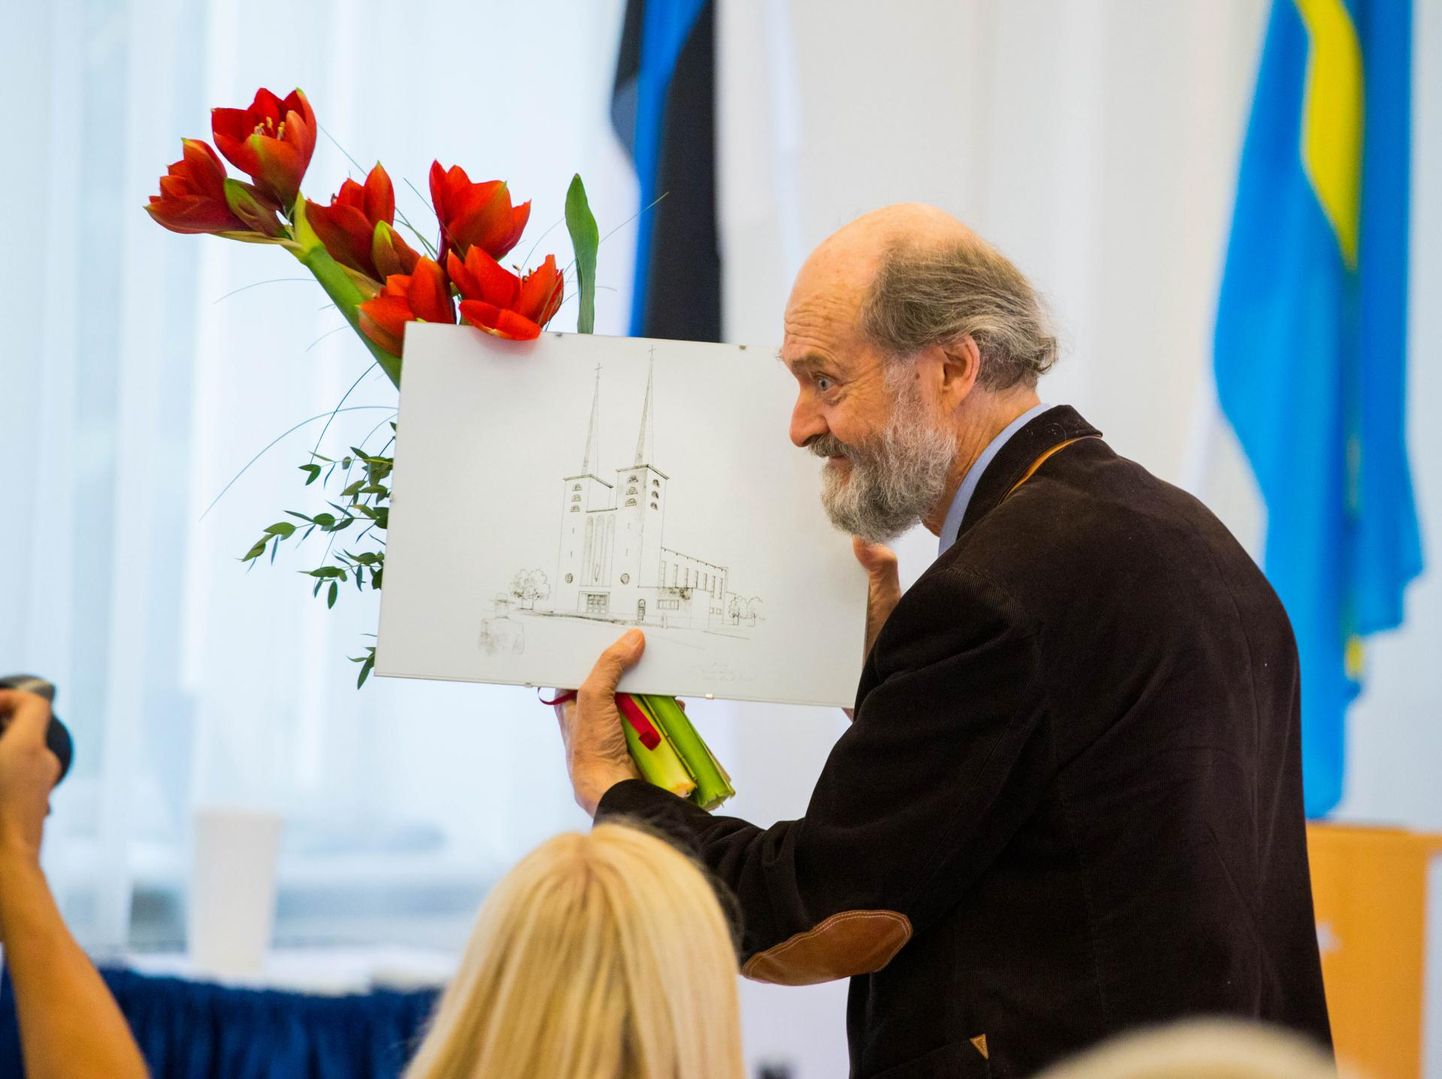 Arvo Pärdil on 11. septembril sünnipäev. Rakvere linnajuhid andsid pärast muusikamaja projekteerimislepingu allkirjastamist maestrole kingituse.